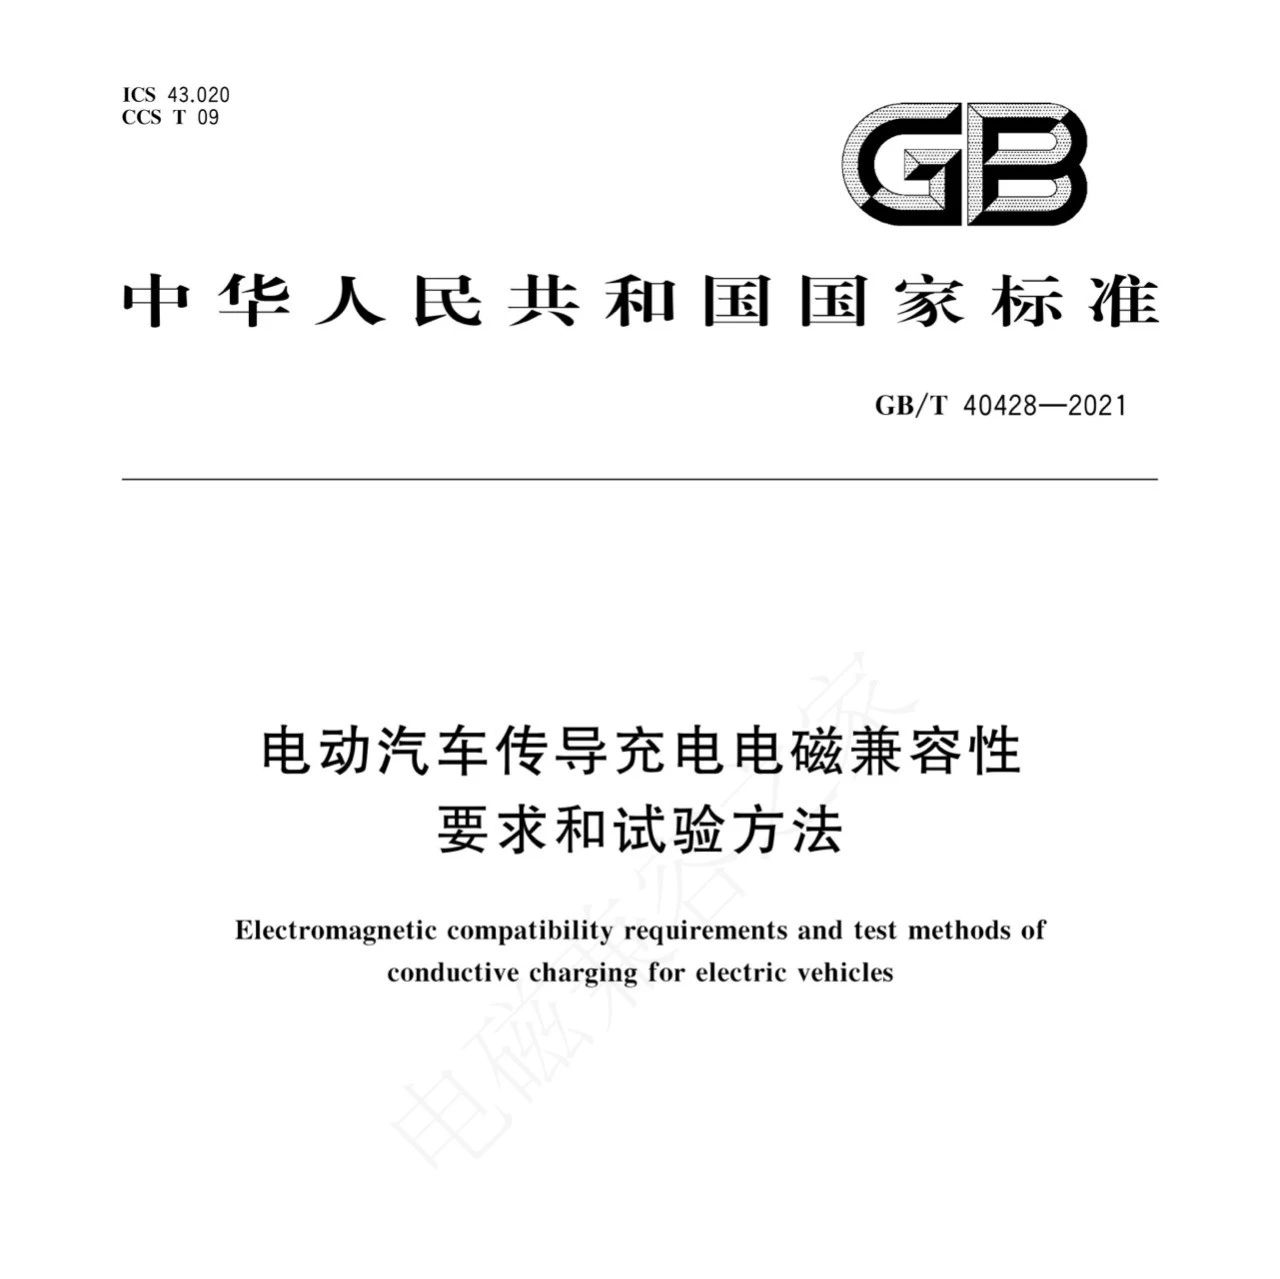 【标准】GB/T 40428-2021 电动汽车传导充电电磁兼容性要求和试验方法